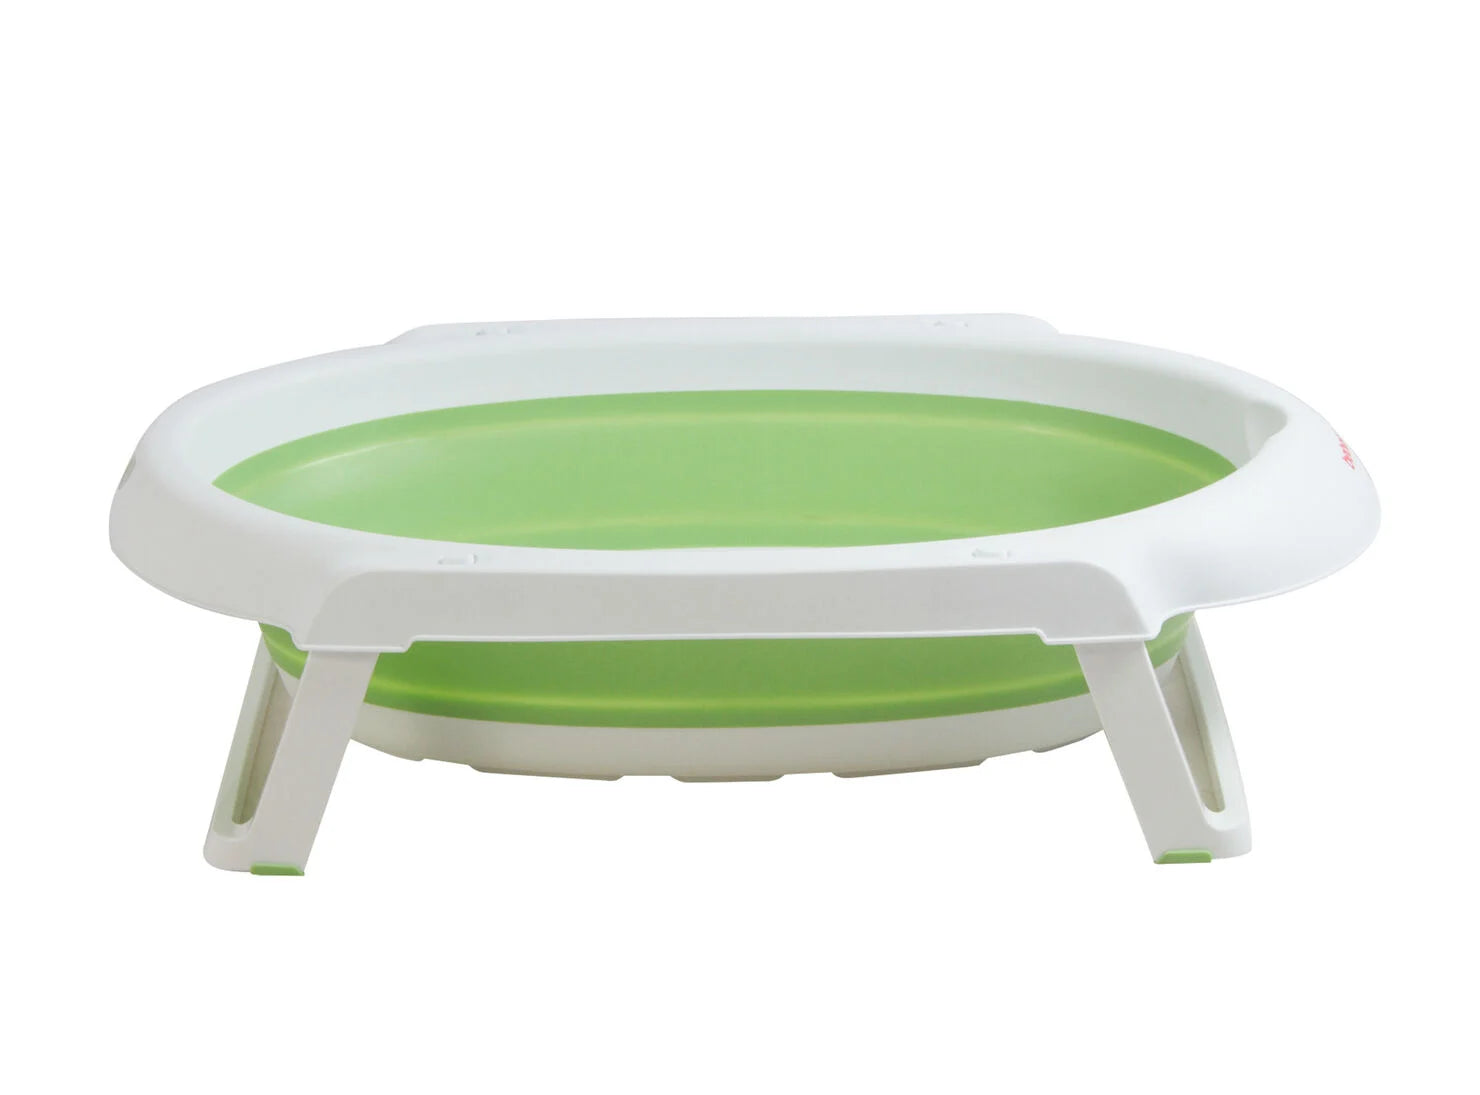 Bañera bebesit jelly plegable verde [Openbox]